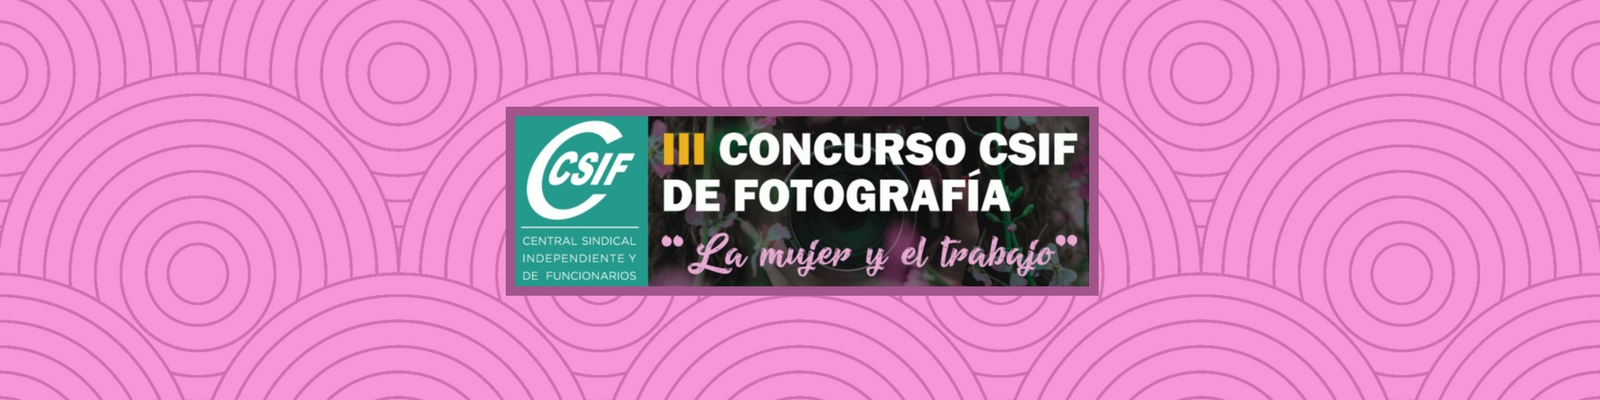 III Concurso CSIF de Fotografía “La mujer y el trabajo”